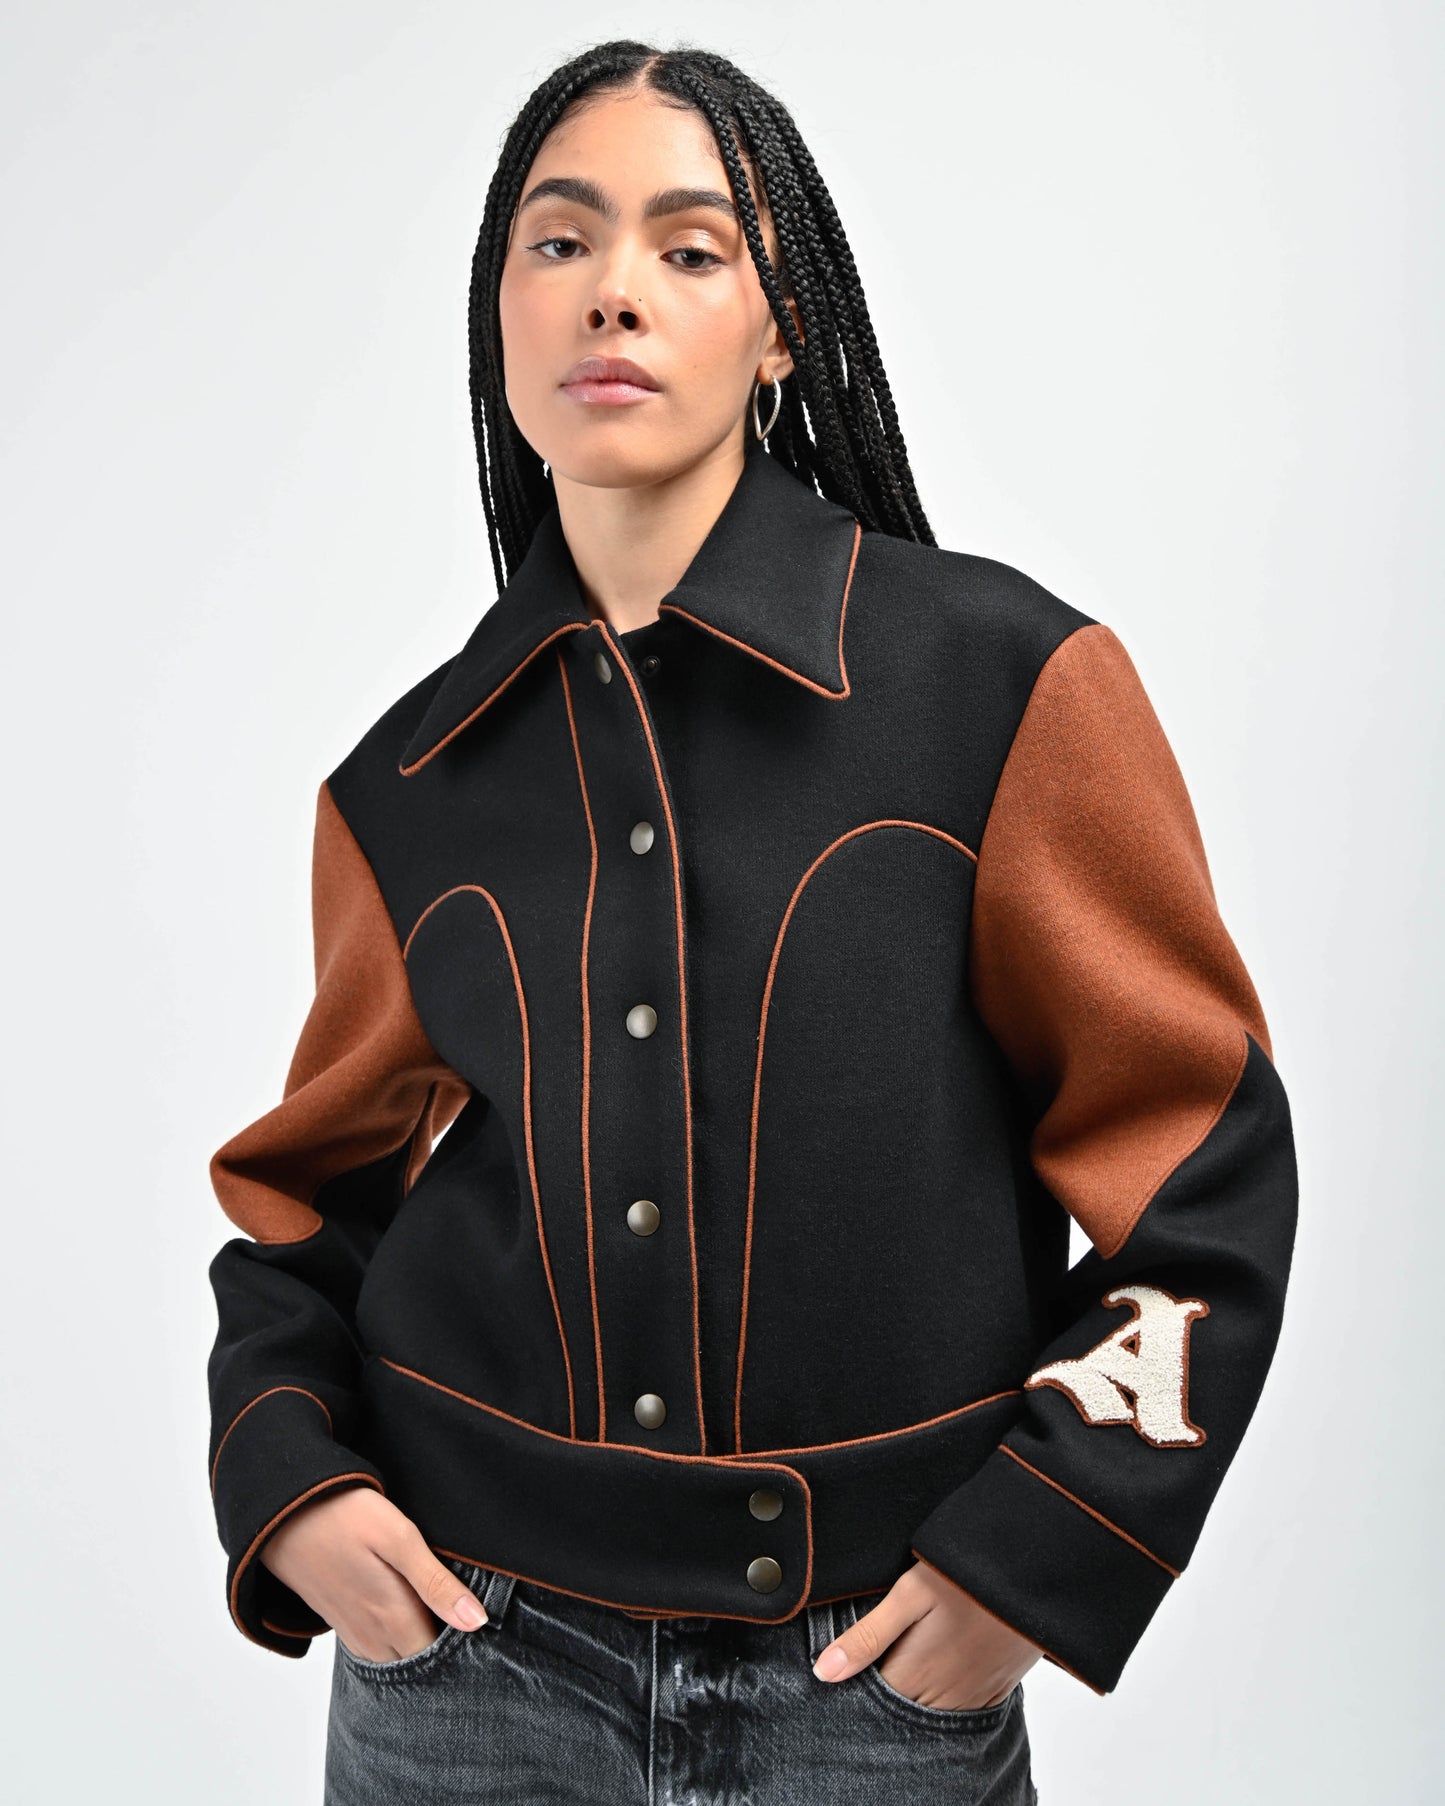 Model is wearing Rue Varsity Jacket in Black by Aseye Studio